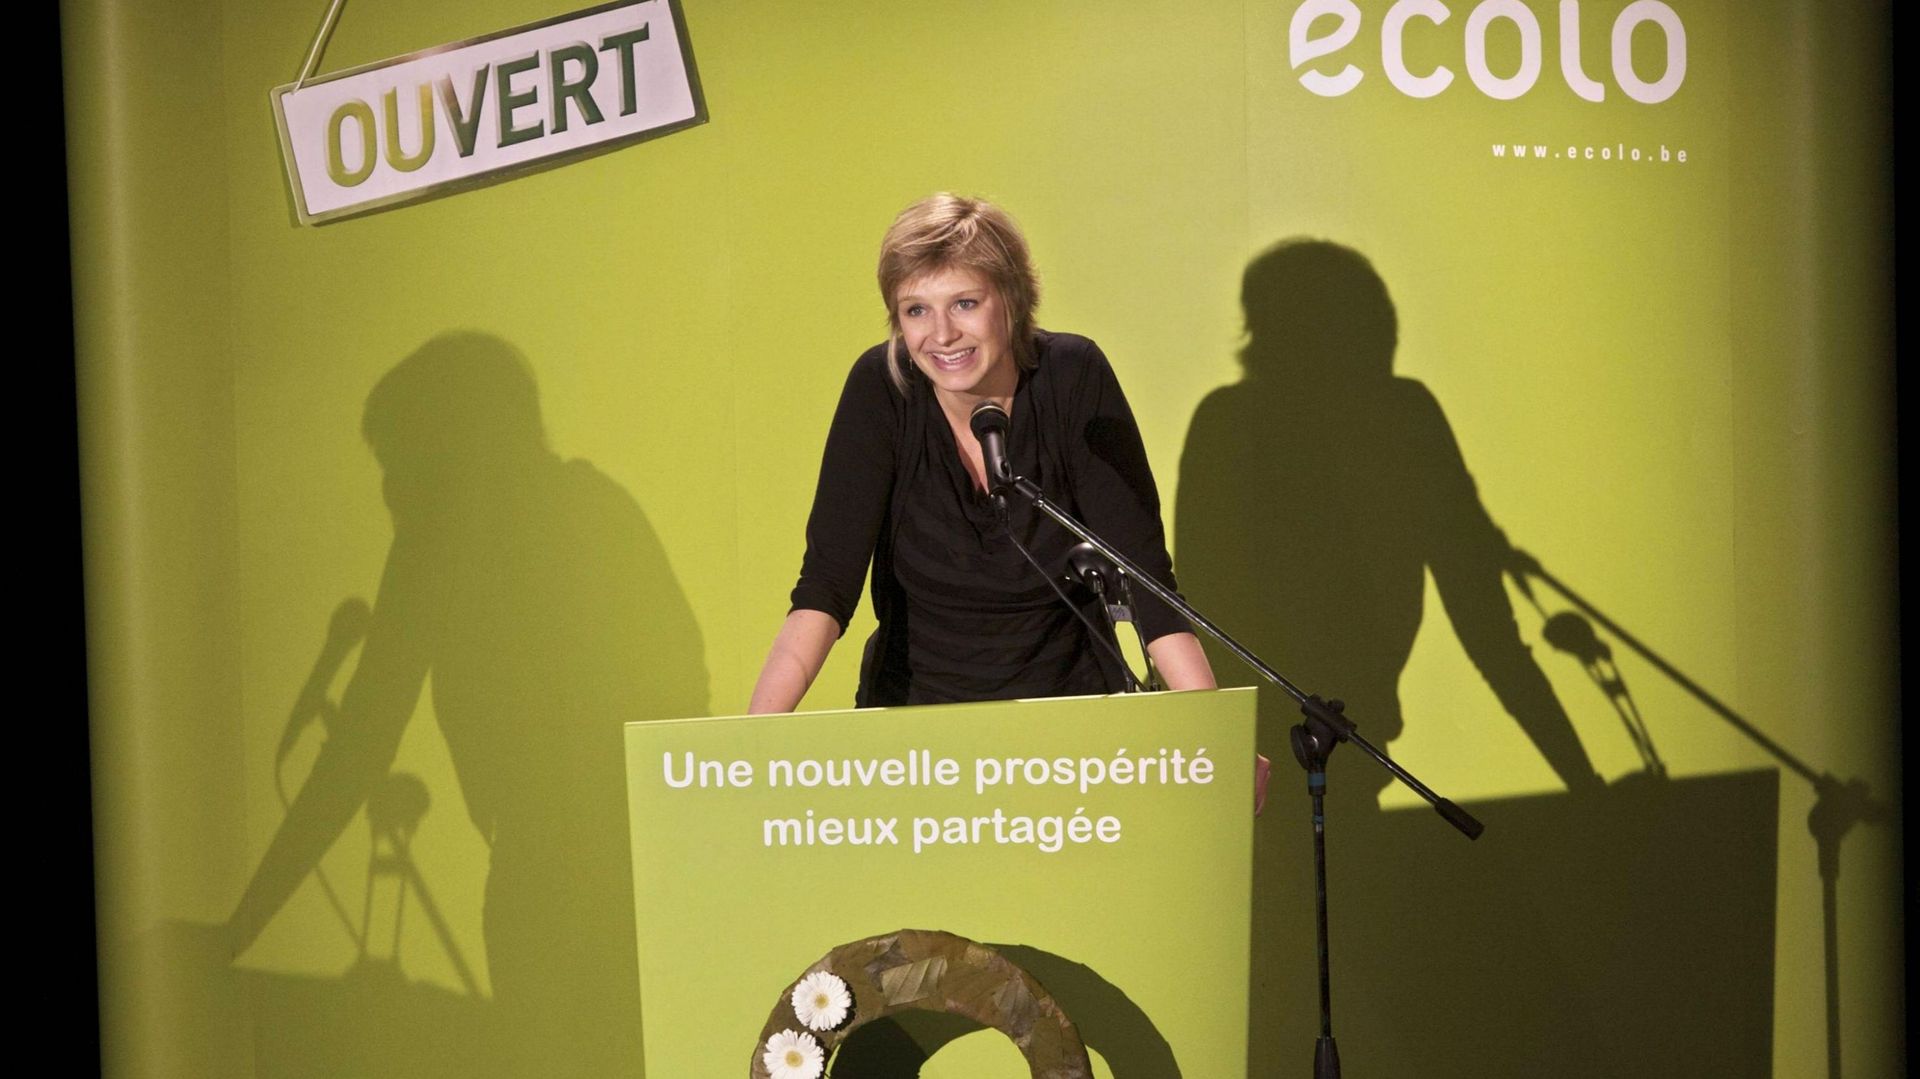 Géraldine Thiry, chercheuse en économie à l'UCL, prononce un discours lors des élections socio-économiques d'Ecolo, à Charleroi, dimanche 23 mai 2010.